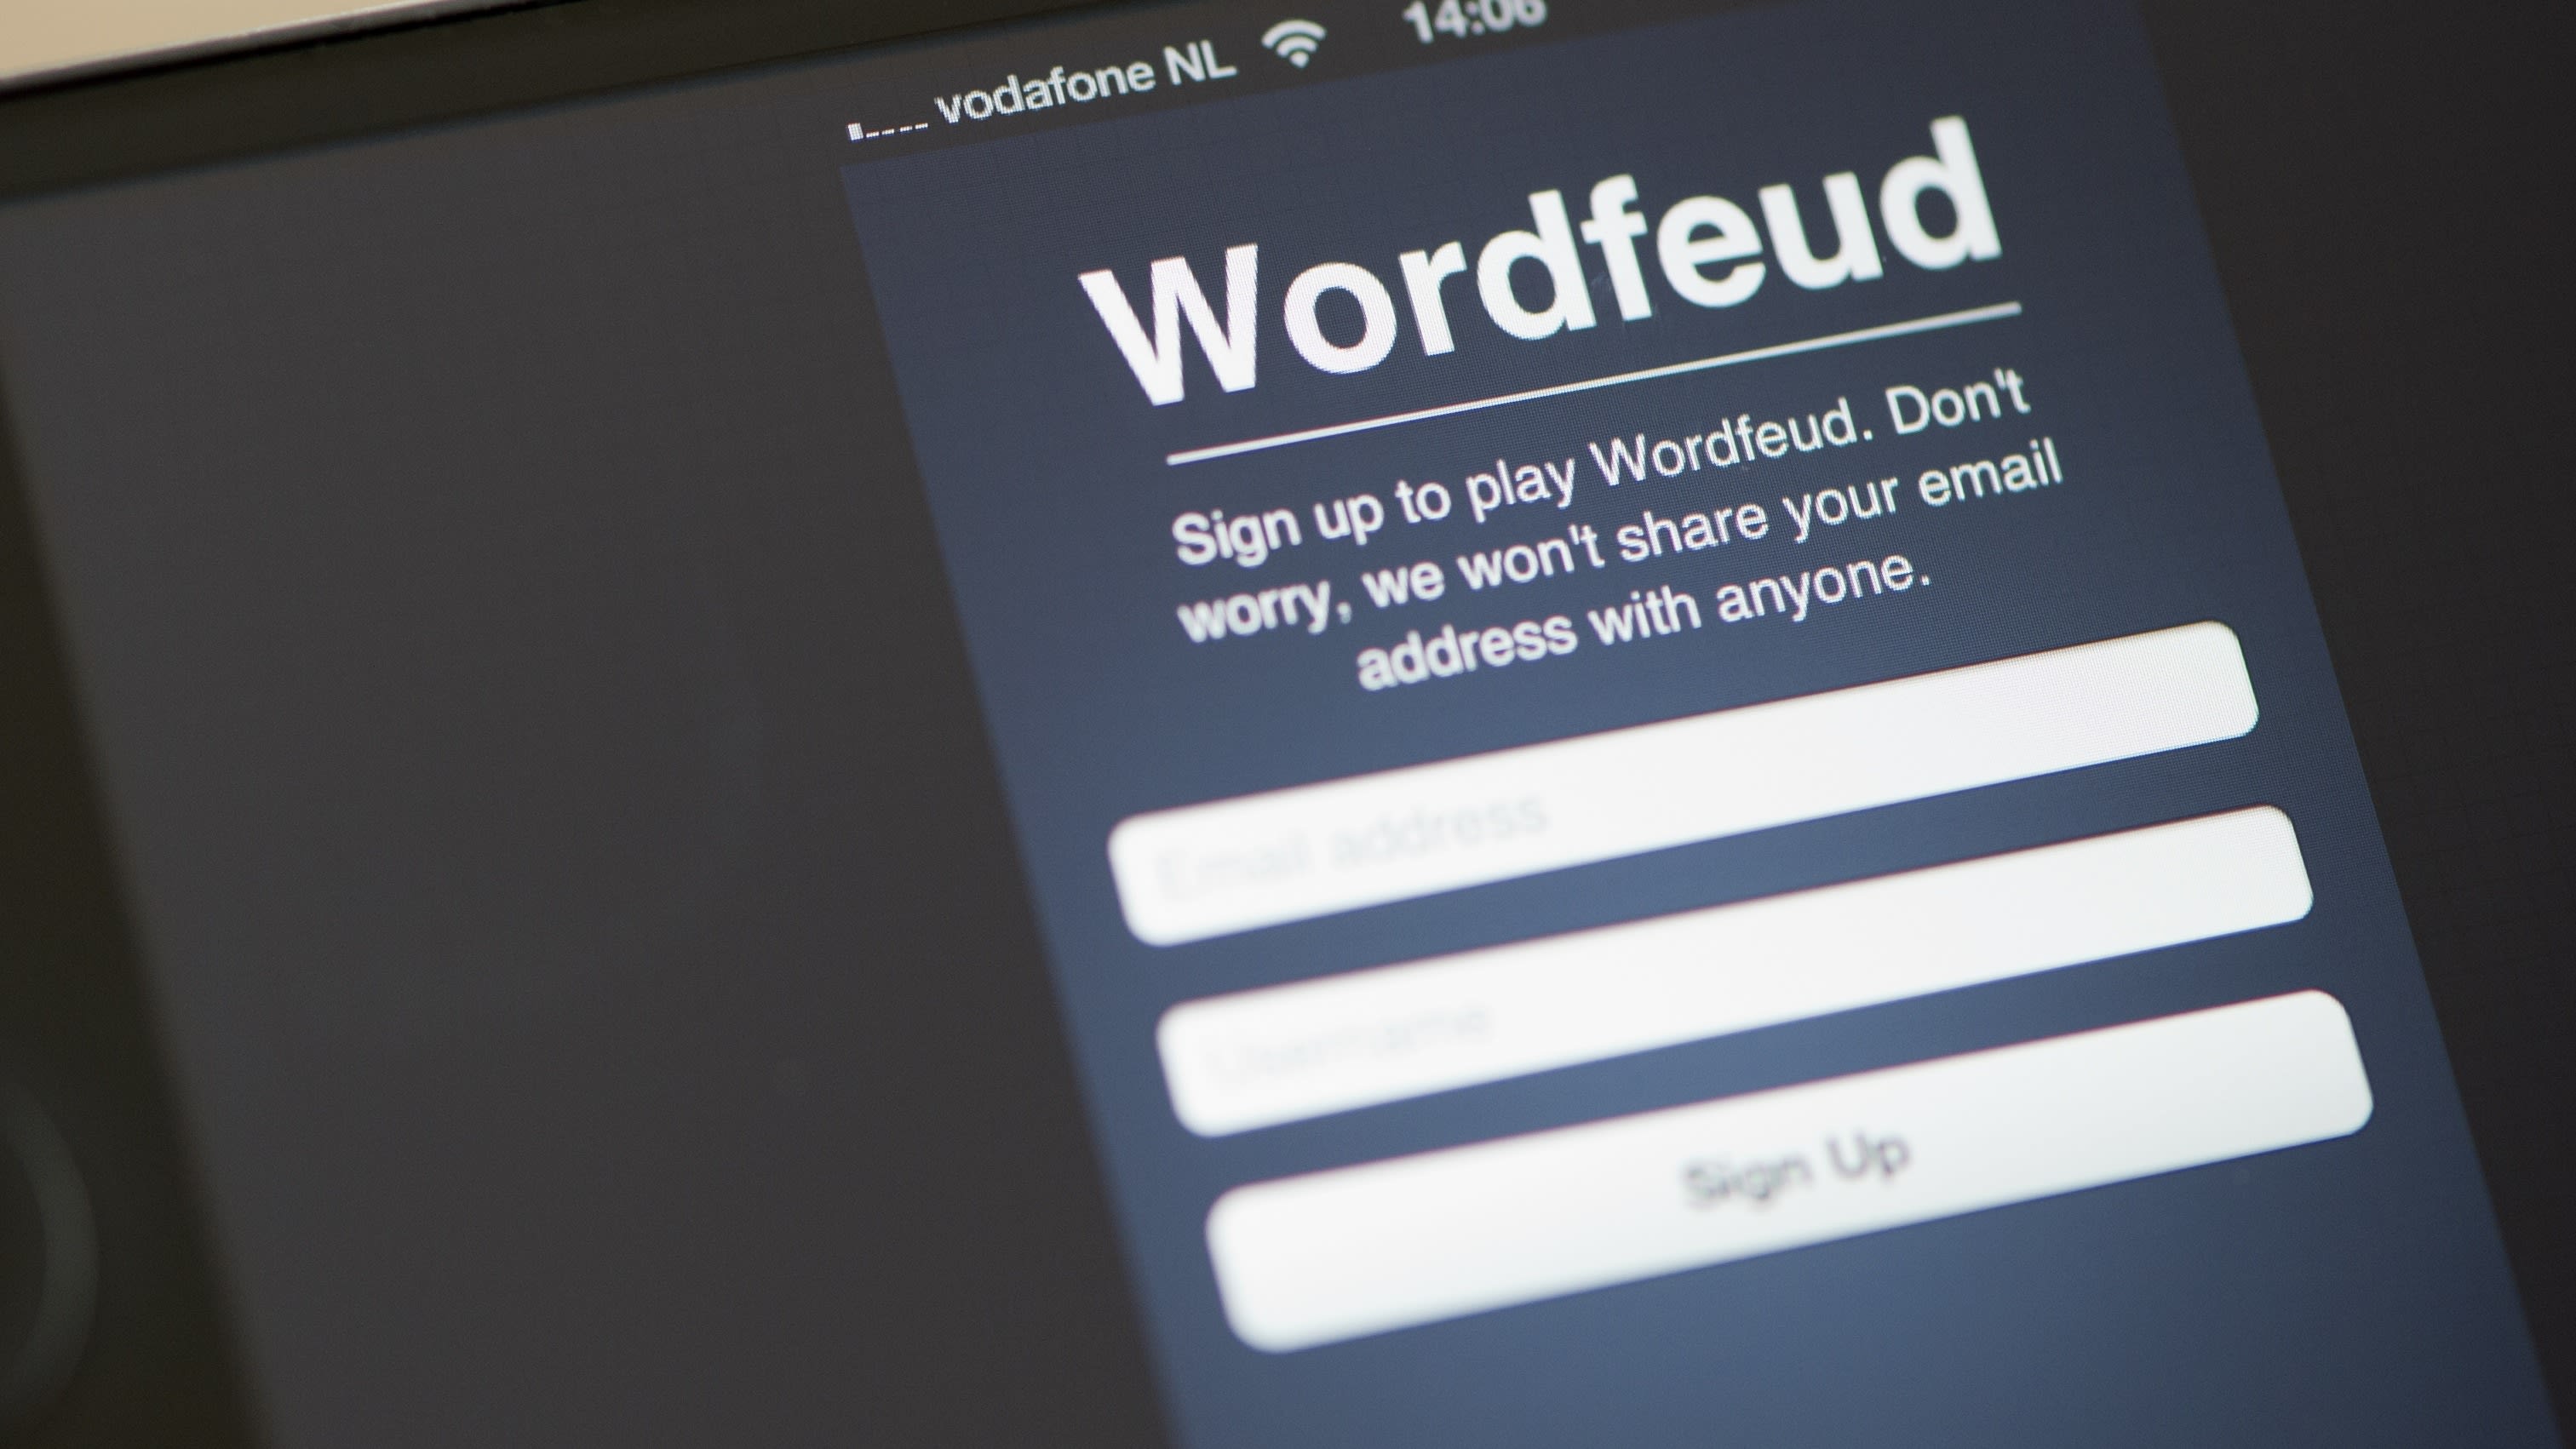 Ongewenste sexting op Wordfeud: 'Je kontje mag er zijn'